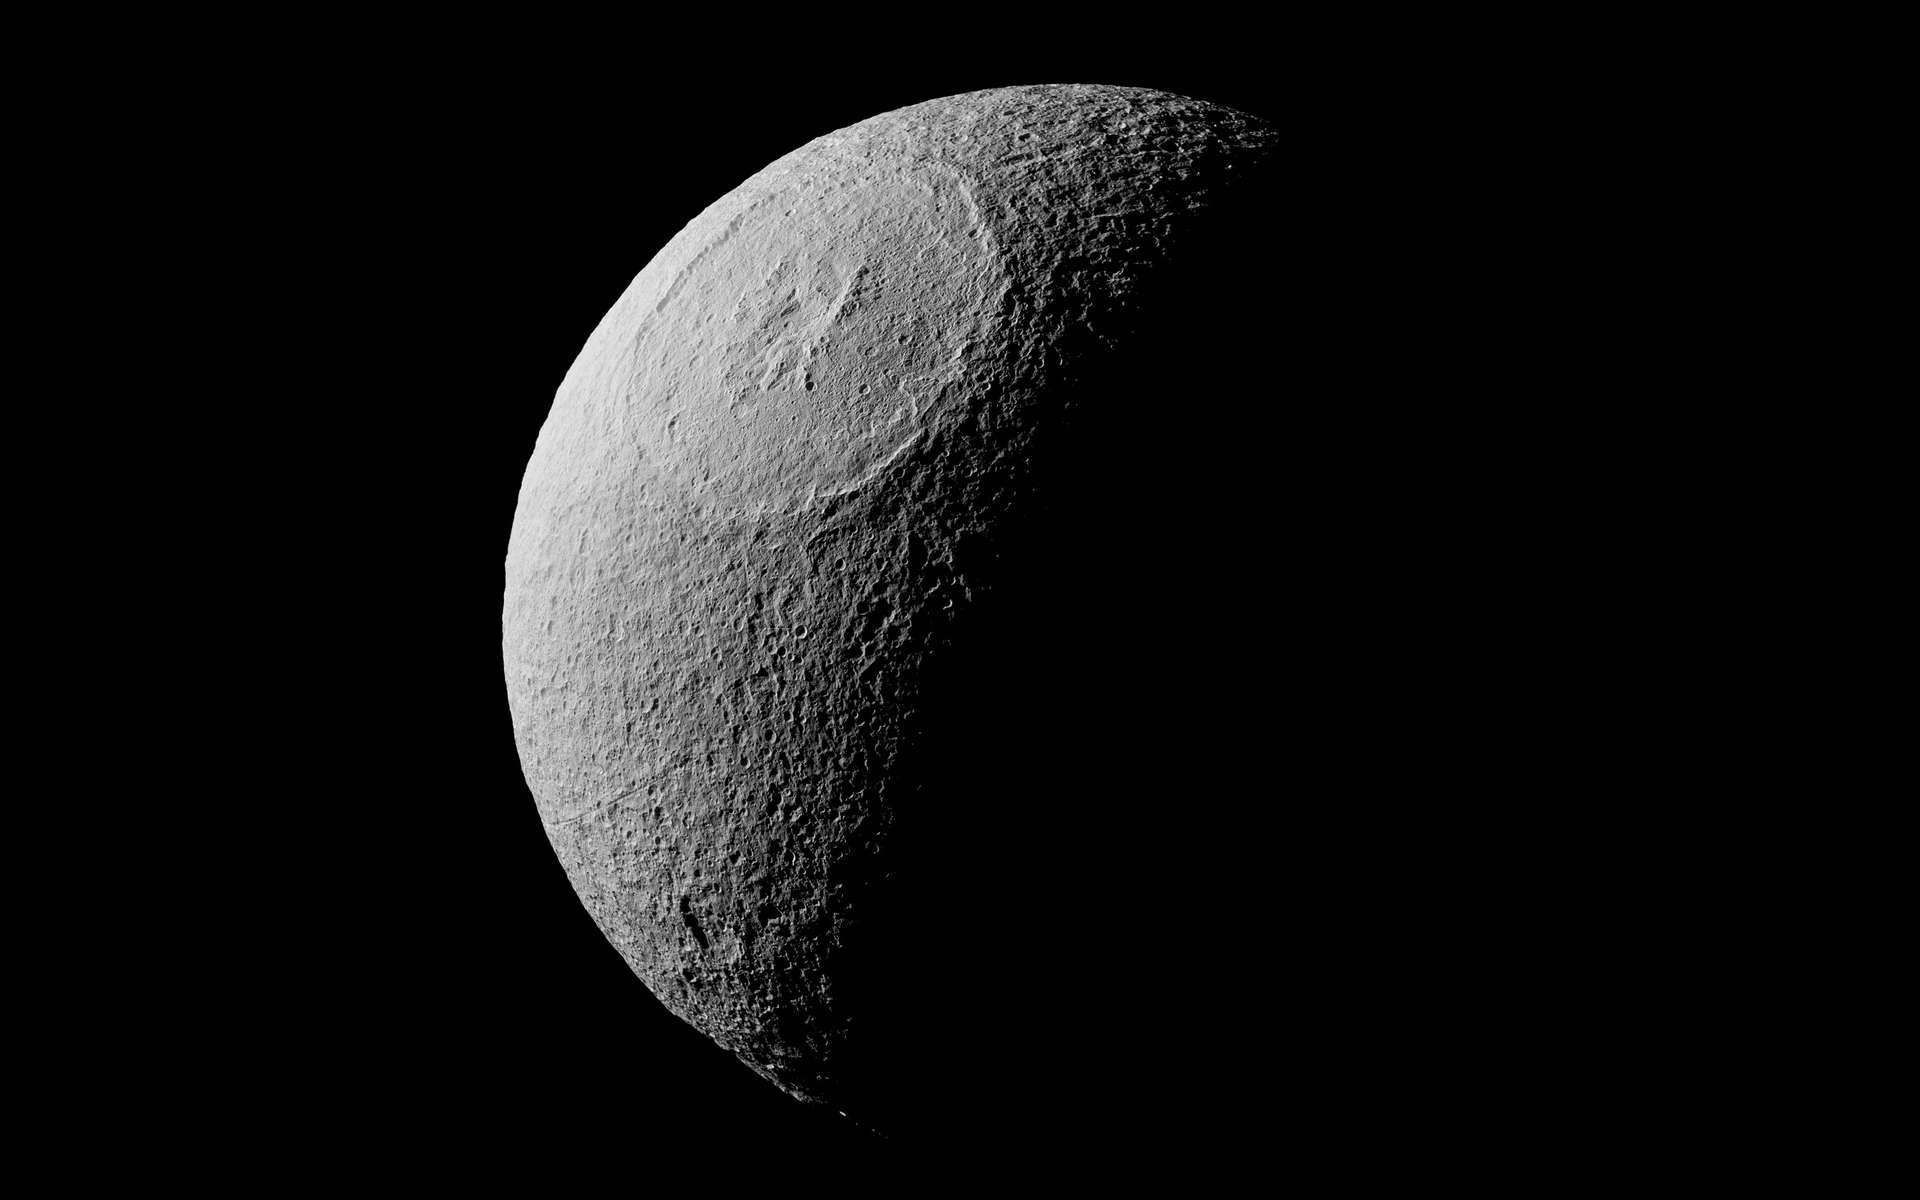 Des chercheurs du Southwest Research Institute (SwRI, États-Unis) présentent une nouvelle preuve que Mimas, la lune de Saturne, pourrait cacher, sous une surface glacée, un vaste océan liquide. © Nasa, JPL-Caltech, Space Science Institute